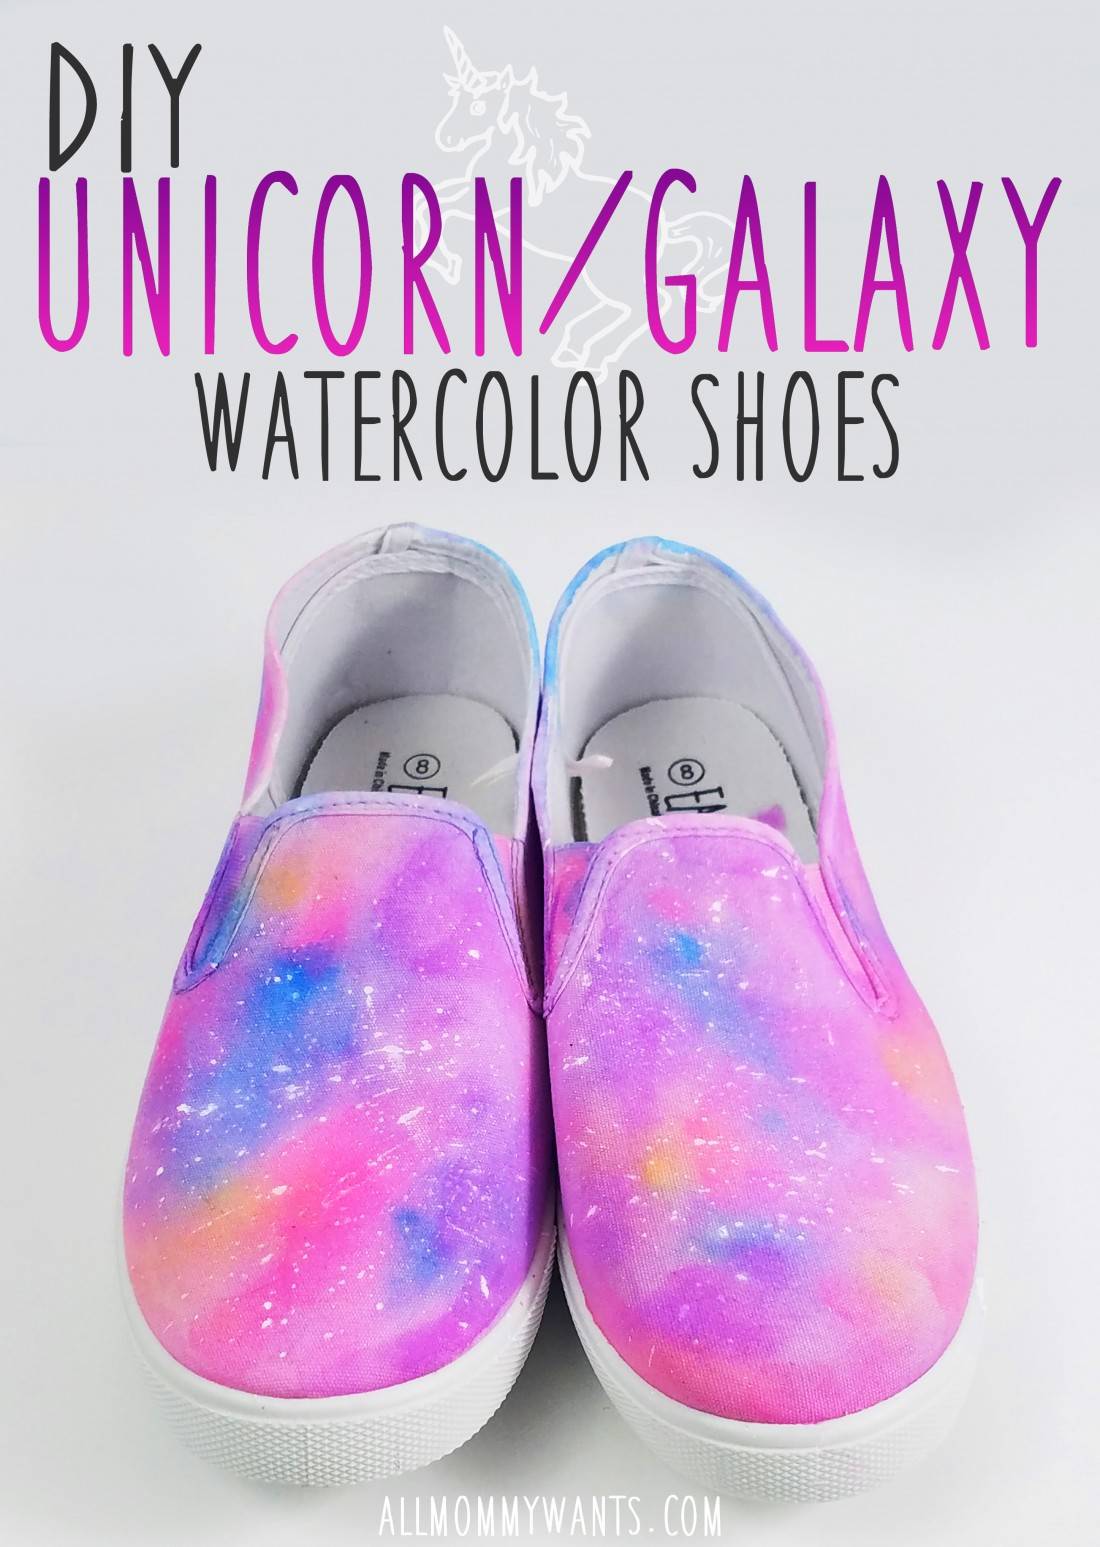 DIY Unicorn Galaxy Watercolor Shoes